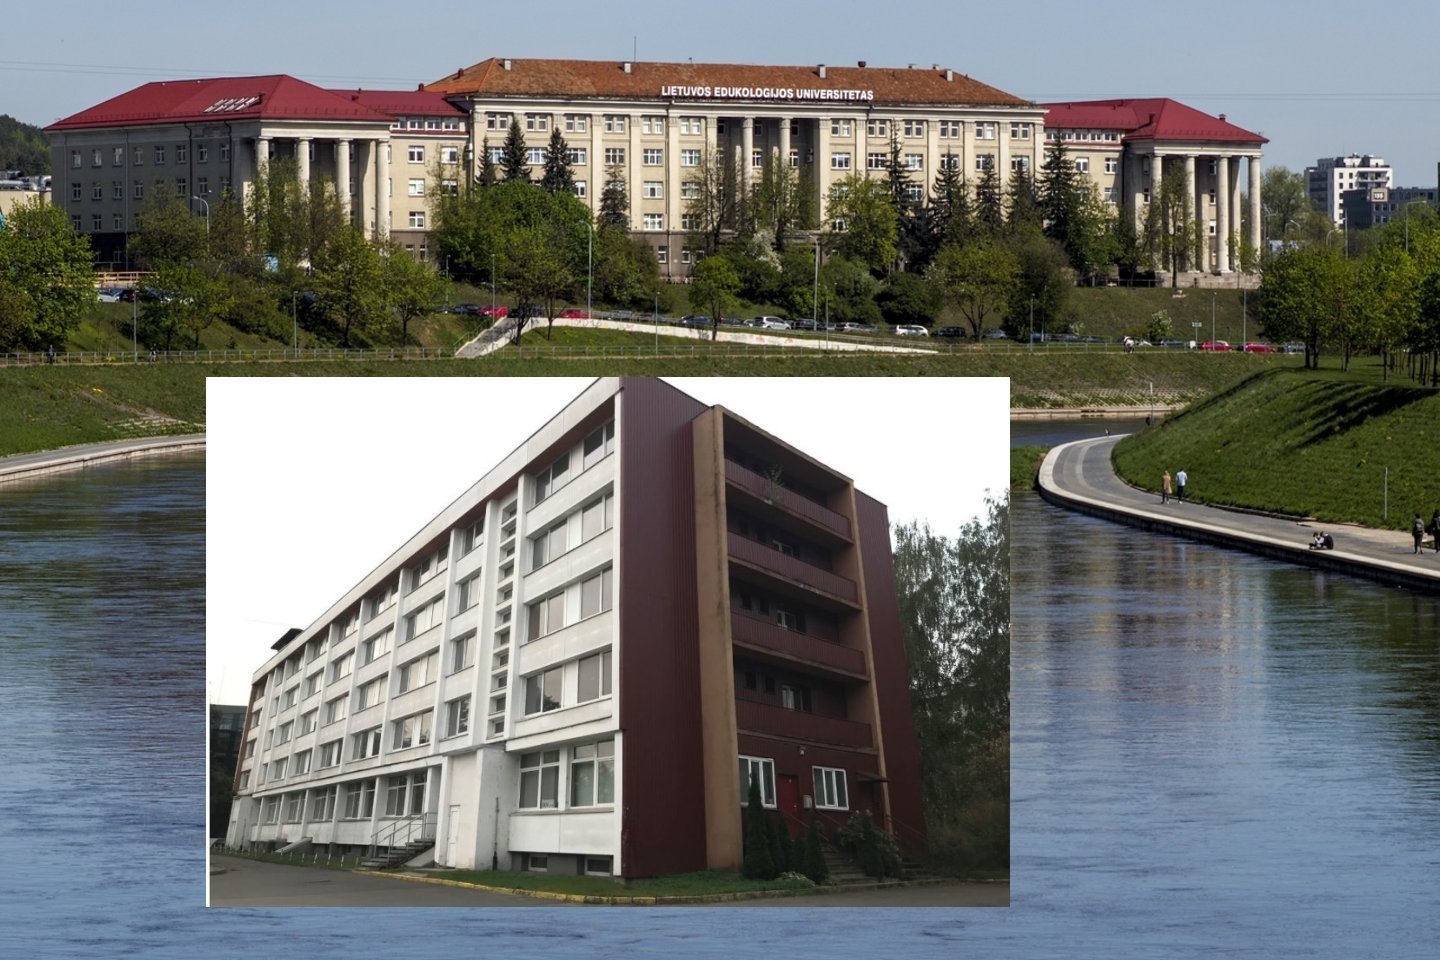 Buvusį Lietuvos edukologijos universiteto (LEU) studentų bendrabutį Vilniuje, Žvėryne, už 3,65 mln. eurų įsigijusi bendrovė planuoja į jo atnaujinimą investuoti daugiau nei 3 mln. eurų.